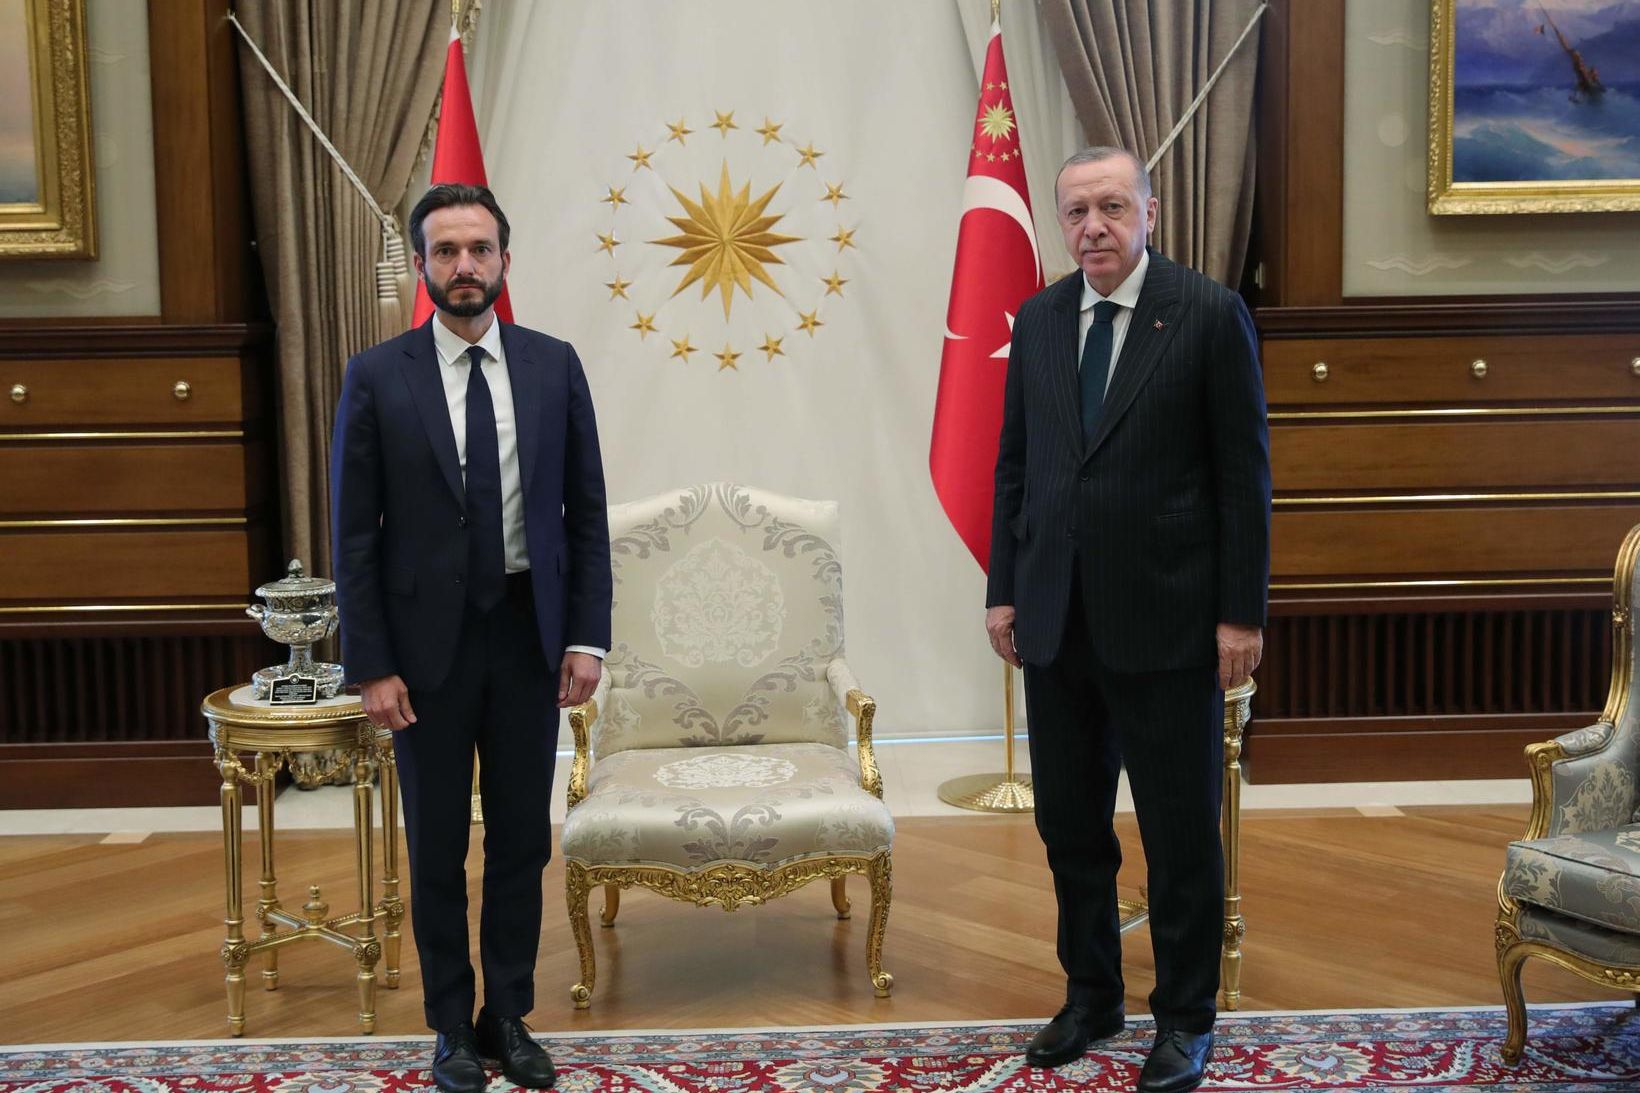 Róbert Spanó, forseti Mannréttindadómstóls Evrópu, og Recep Tayyip Erdogan, forseti …